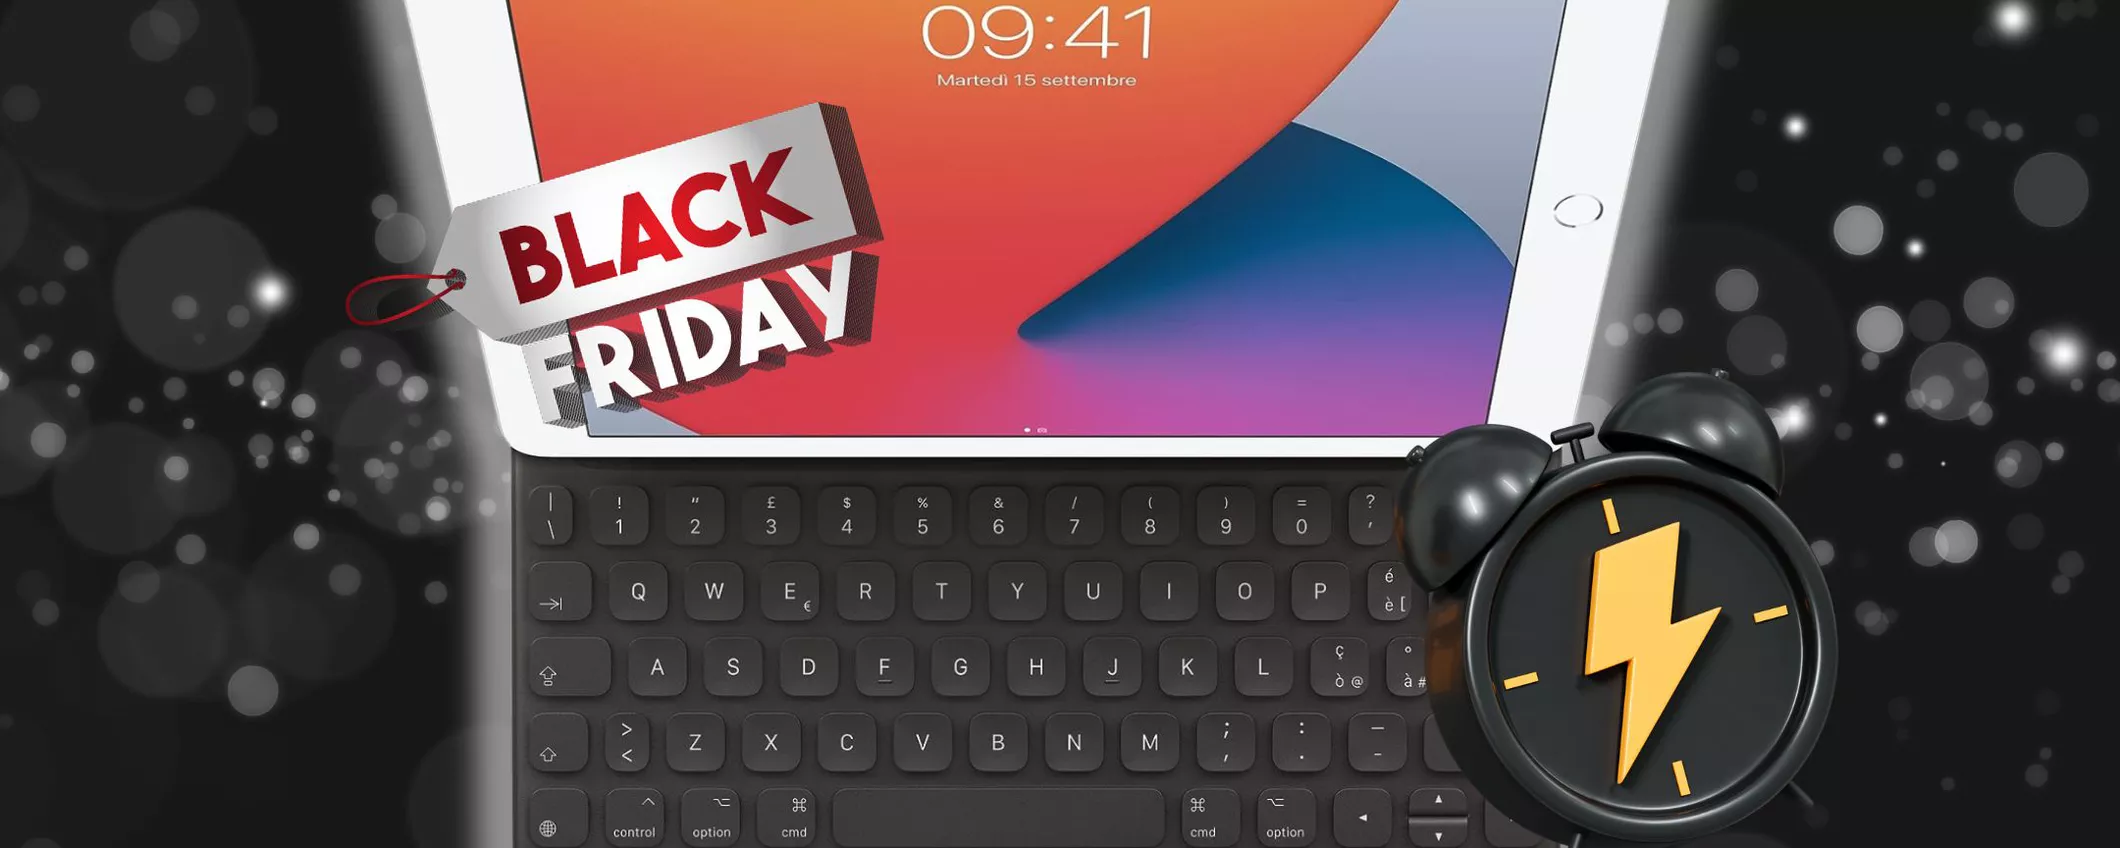 Tastiera per iPad: il BLACK FRIDAY sta finendo e il prezzo CROLLA solo per oggi!